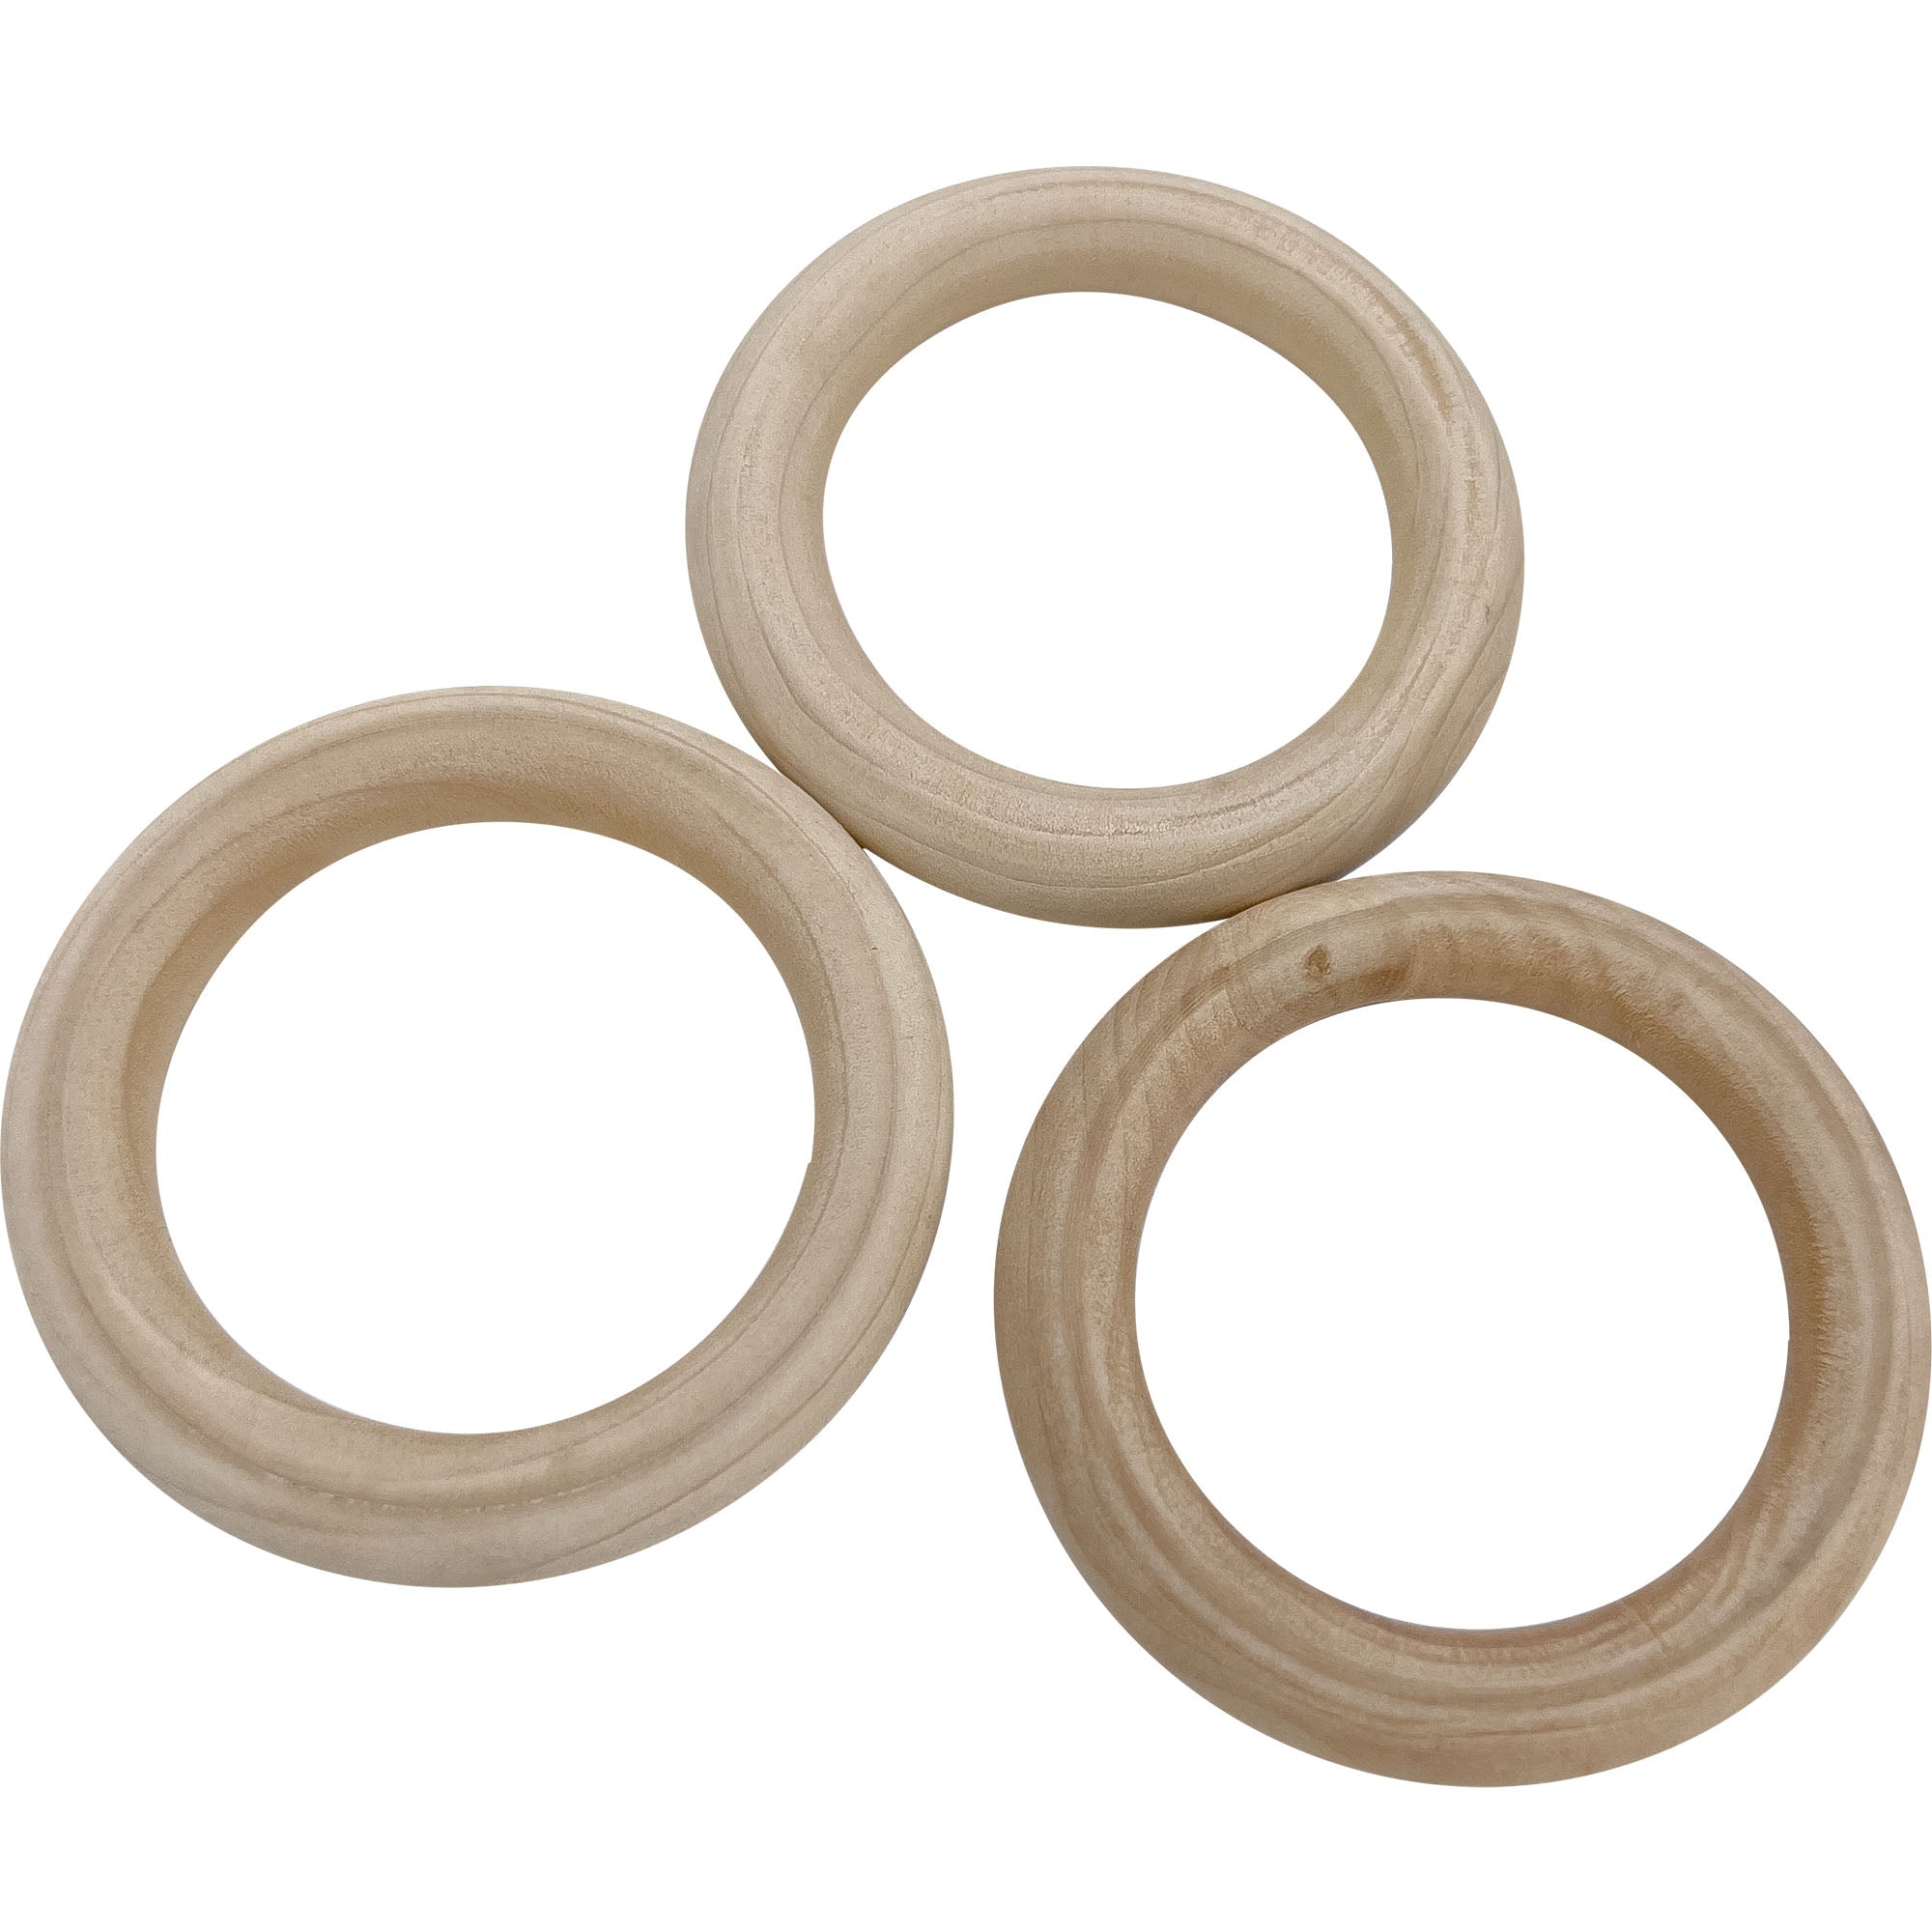 2178 Pk3 Medium Wood Rings